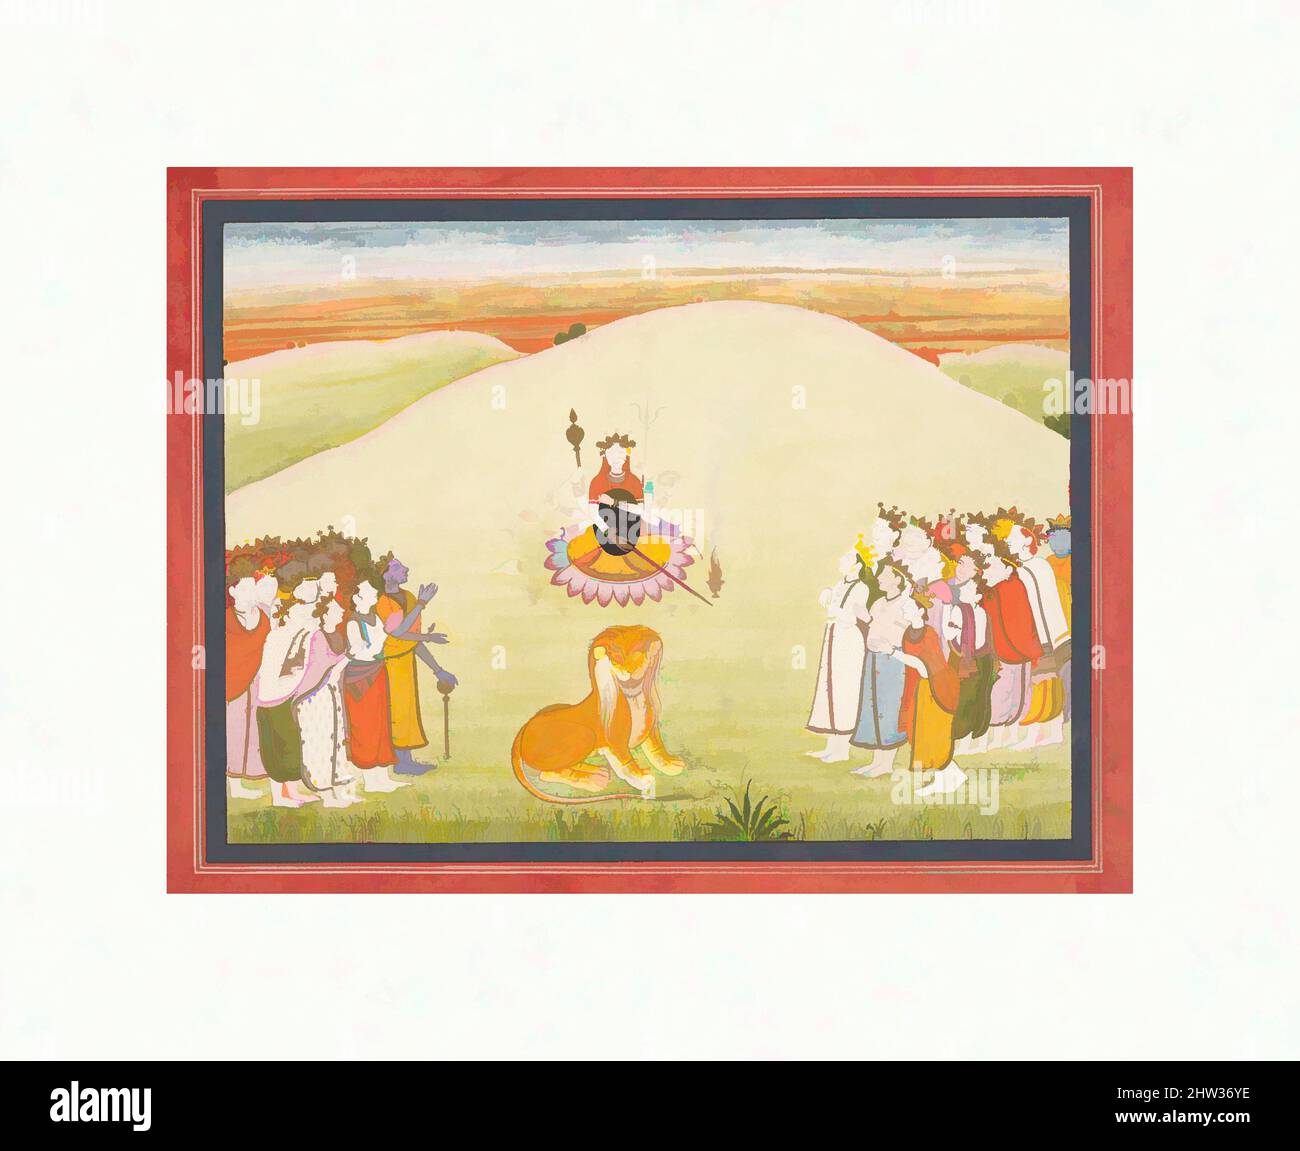 Art inspiré par la création de Durga: Page d'un Markandeya Purana dispersé: (Histoires de la Sage Markandeya), ca. 1810–20, Inde (Punjab Hills, Guler), encre et aquarelle opaque sur papier, à l'intérieur des bordures : 6 7/8 x 9 1/8 po. (17,5 x 23,2 cm), peintures, Durga a été créé par les dieux, oeuvres classiques modernisées par Artotop avec une touche de modernité. Formes, couleur et valeur, impact visuel accrocheur sur l'art émotions par la liberté d'œuvres d'art d'une manière contemporaine. Un message intemporel qui cherche une nouvelle direction créative. Artistes qui se tournent vers le support numérique et créent le NFT Artotop Banque D'Images